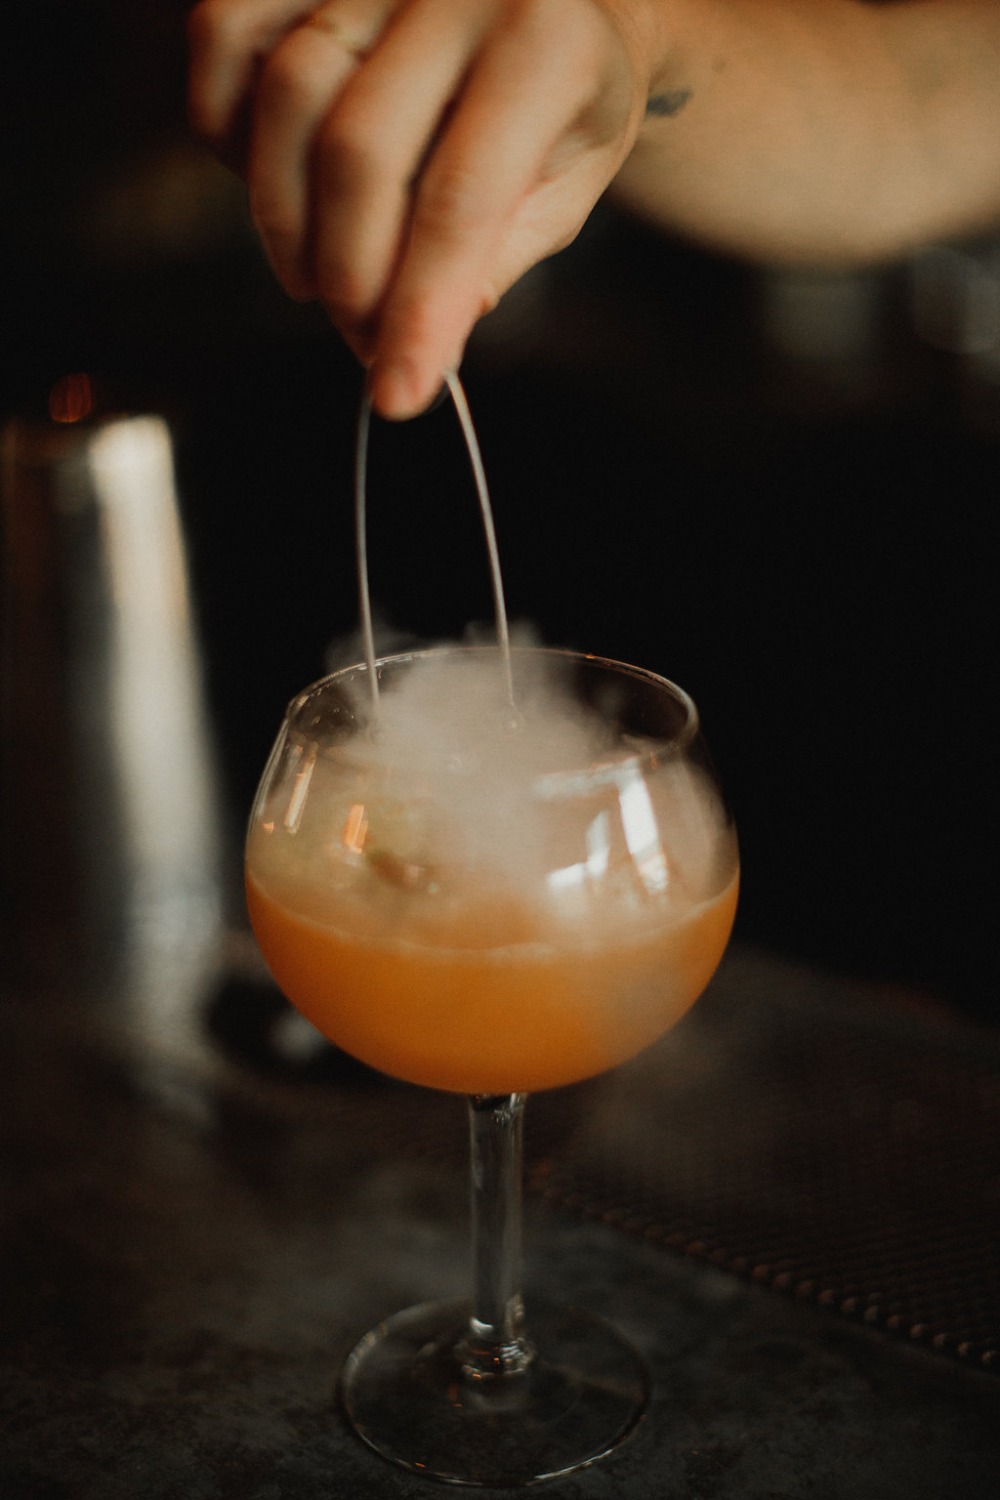 smokey cocktail